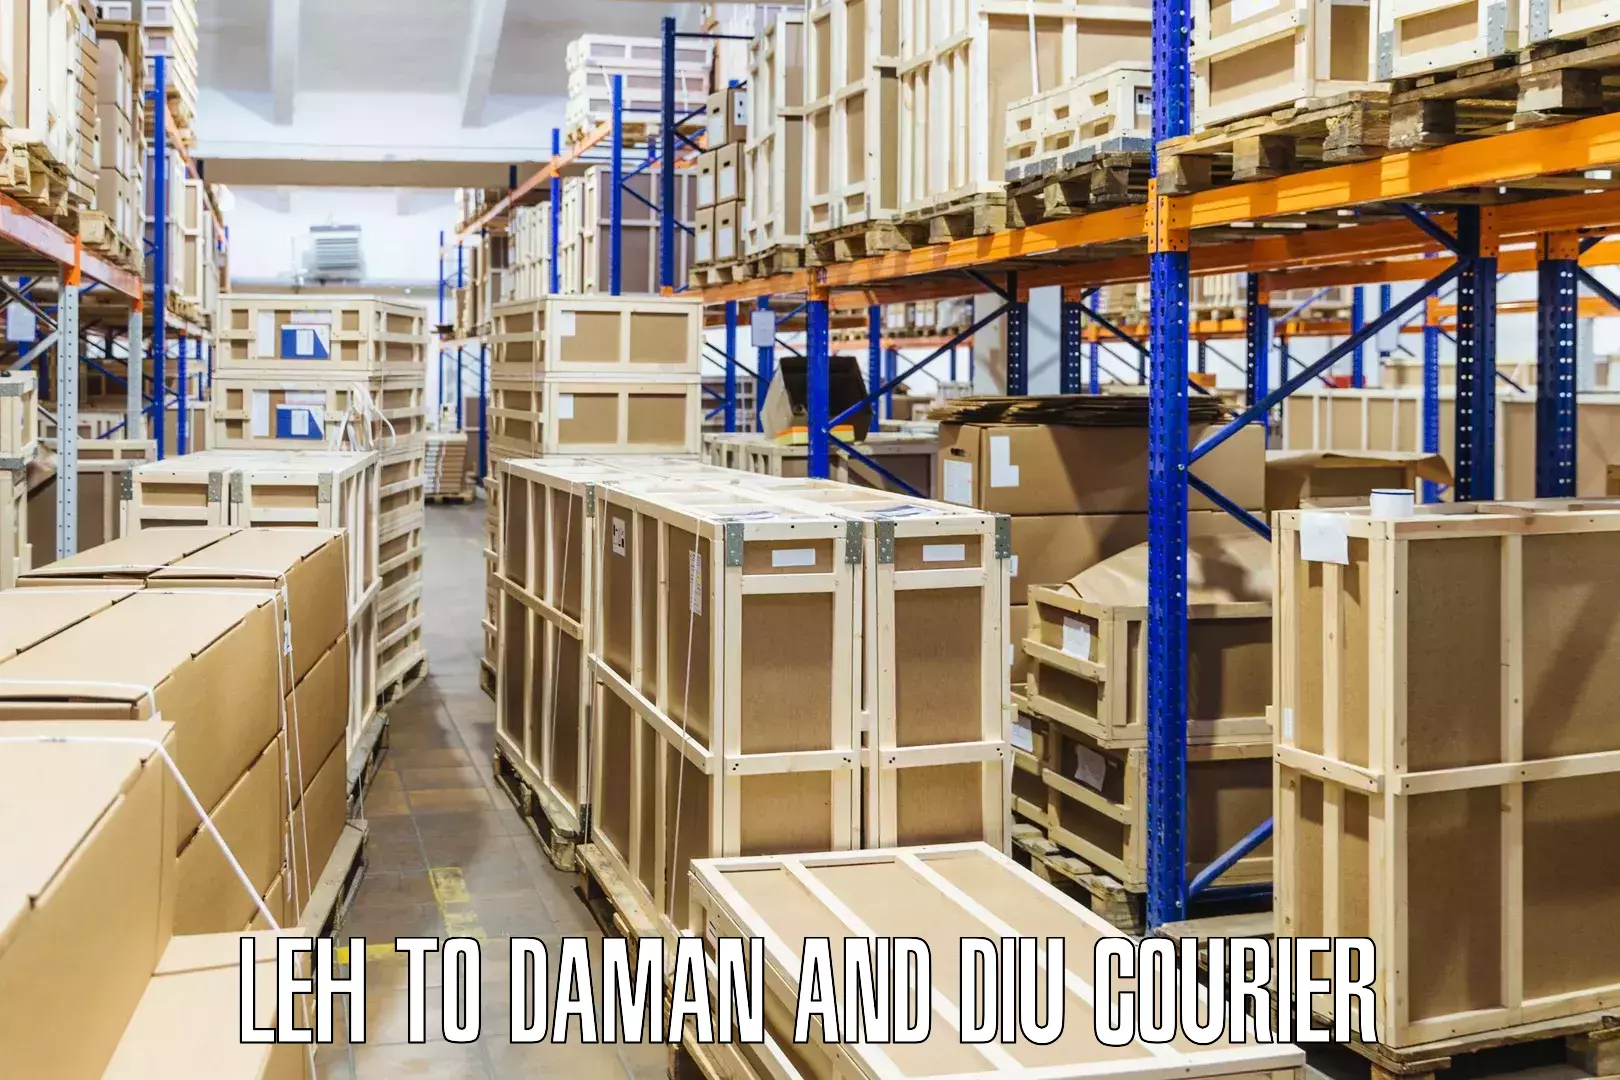 High-performance logistics Leh to Daman and Diu